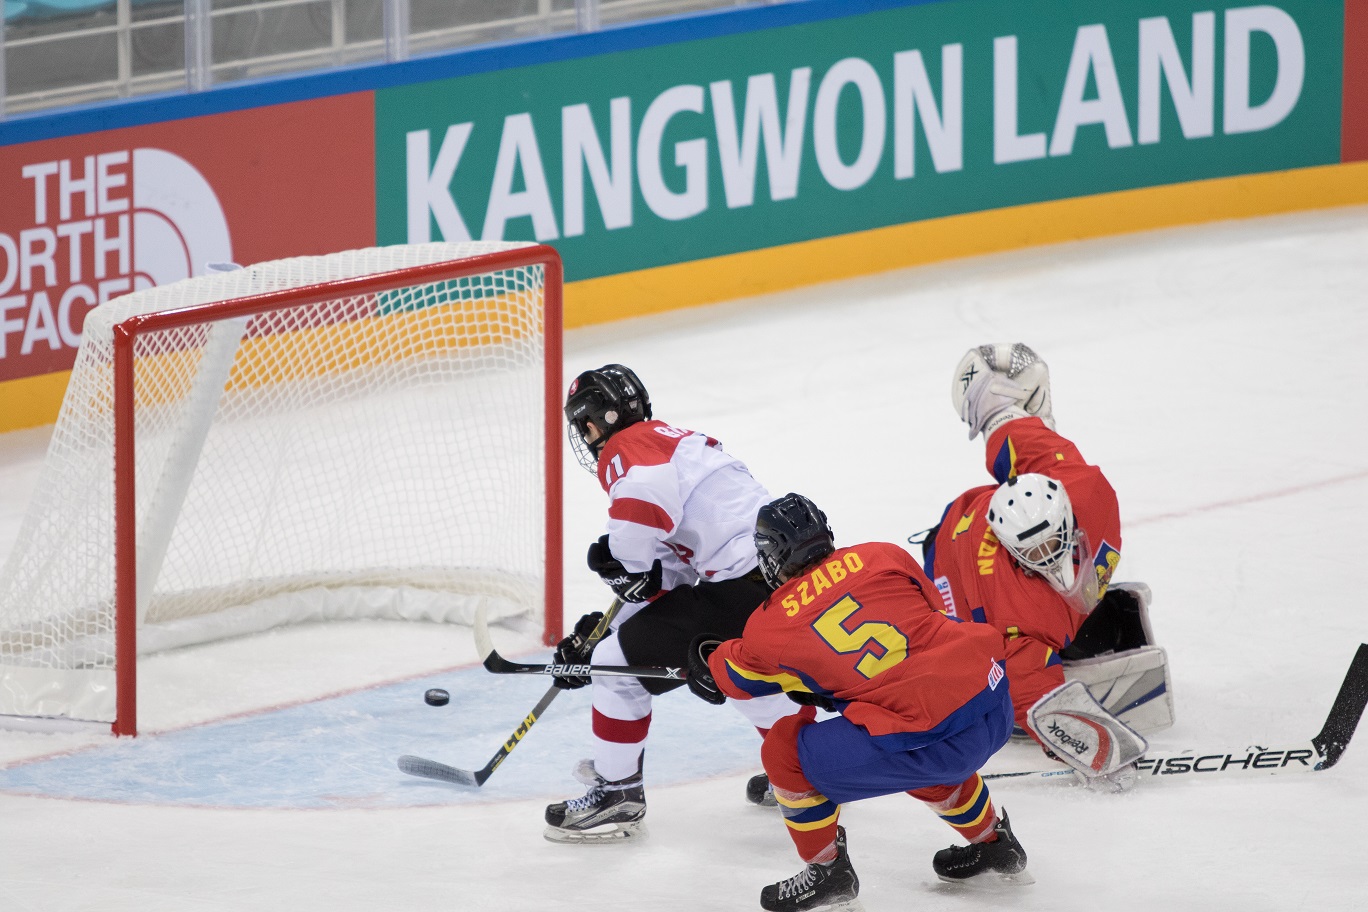 Lietuva jaunių pasaulio ledo ritulio čempionato II diviziono A grupės antrose rungtynėse po pratęsimo 4:3 nugalėjo Rumuniją ir pirmauja čempionate.